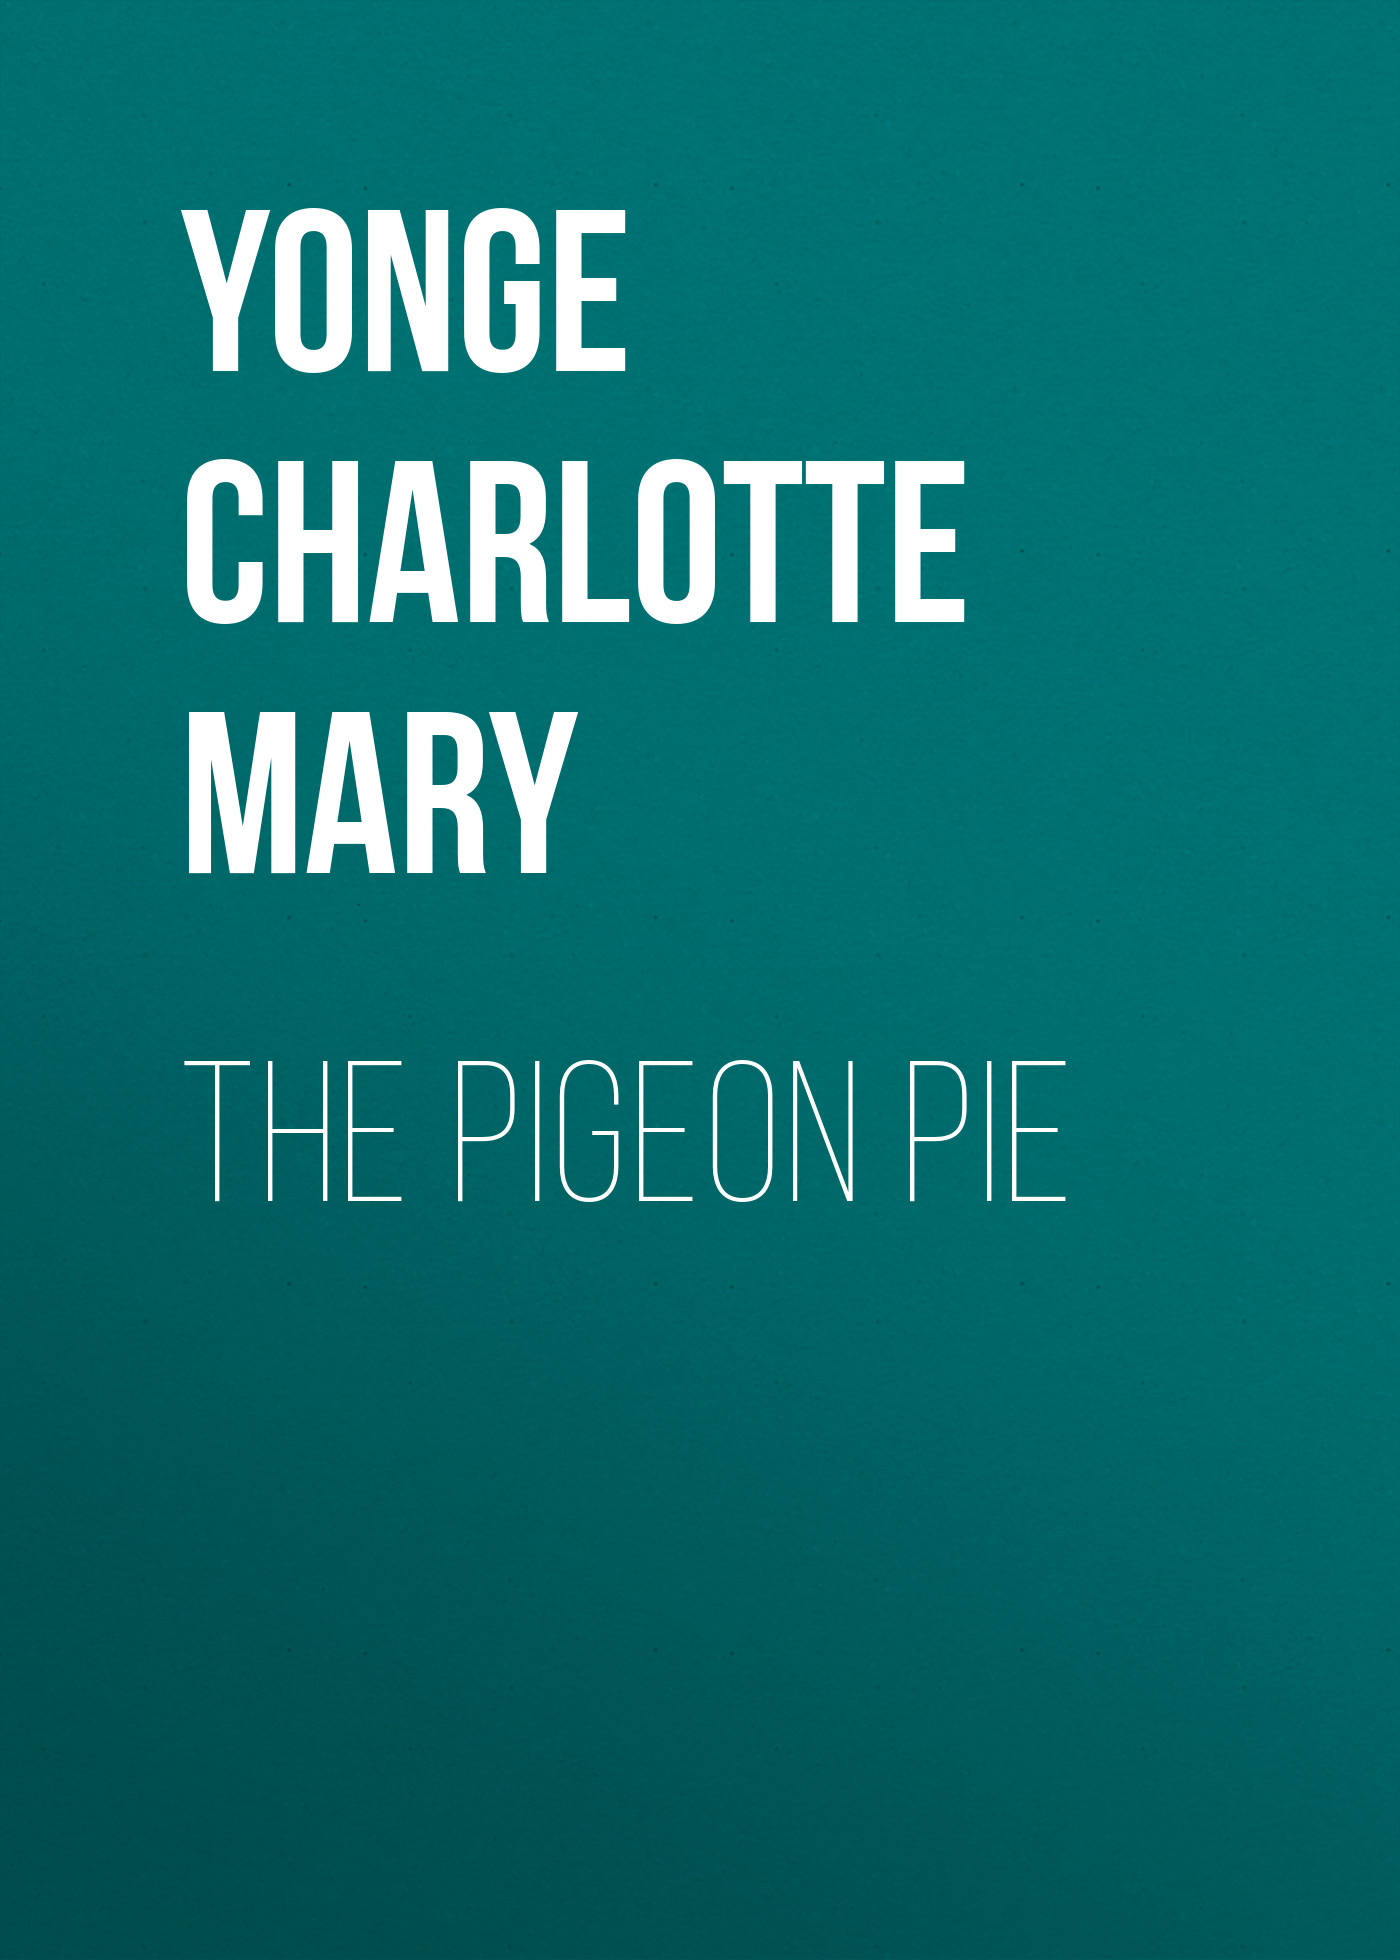 Книга The Pigeon Pie из серии , созданная Charlotte Yonge, написана в жанре Историческая фантастика, Зарубежная старинная литература, Зарубежная классика, Зарубежные детские книги, Исторические приключения. Стоимость электронной книги The Pigeon Pie с идентификатором 36096989 составляет 0 руб.